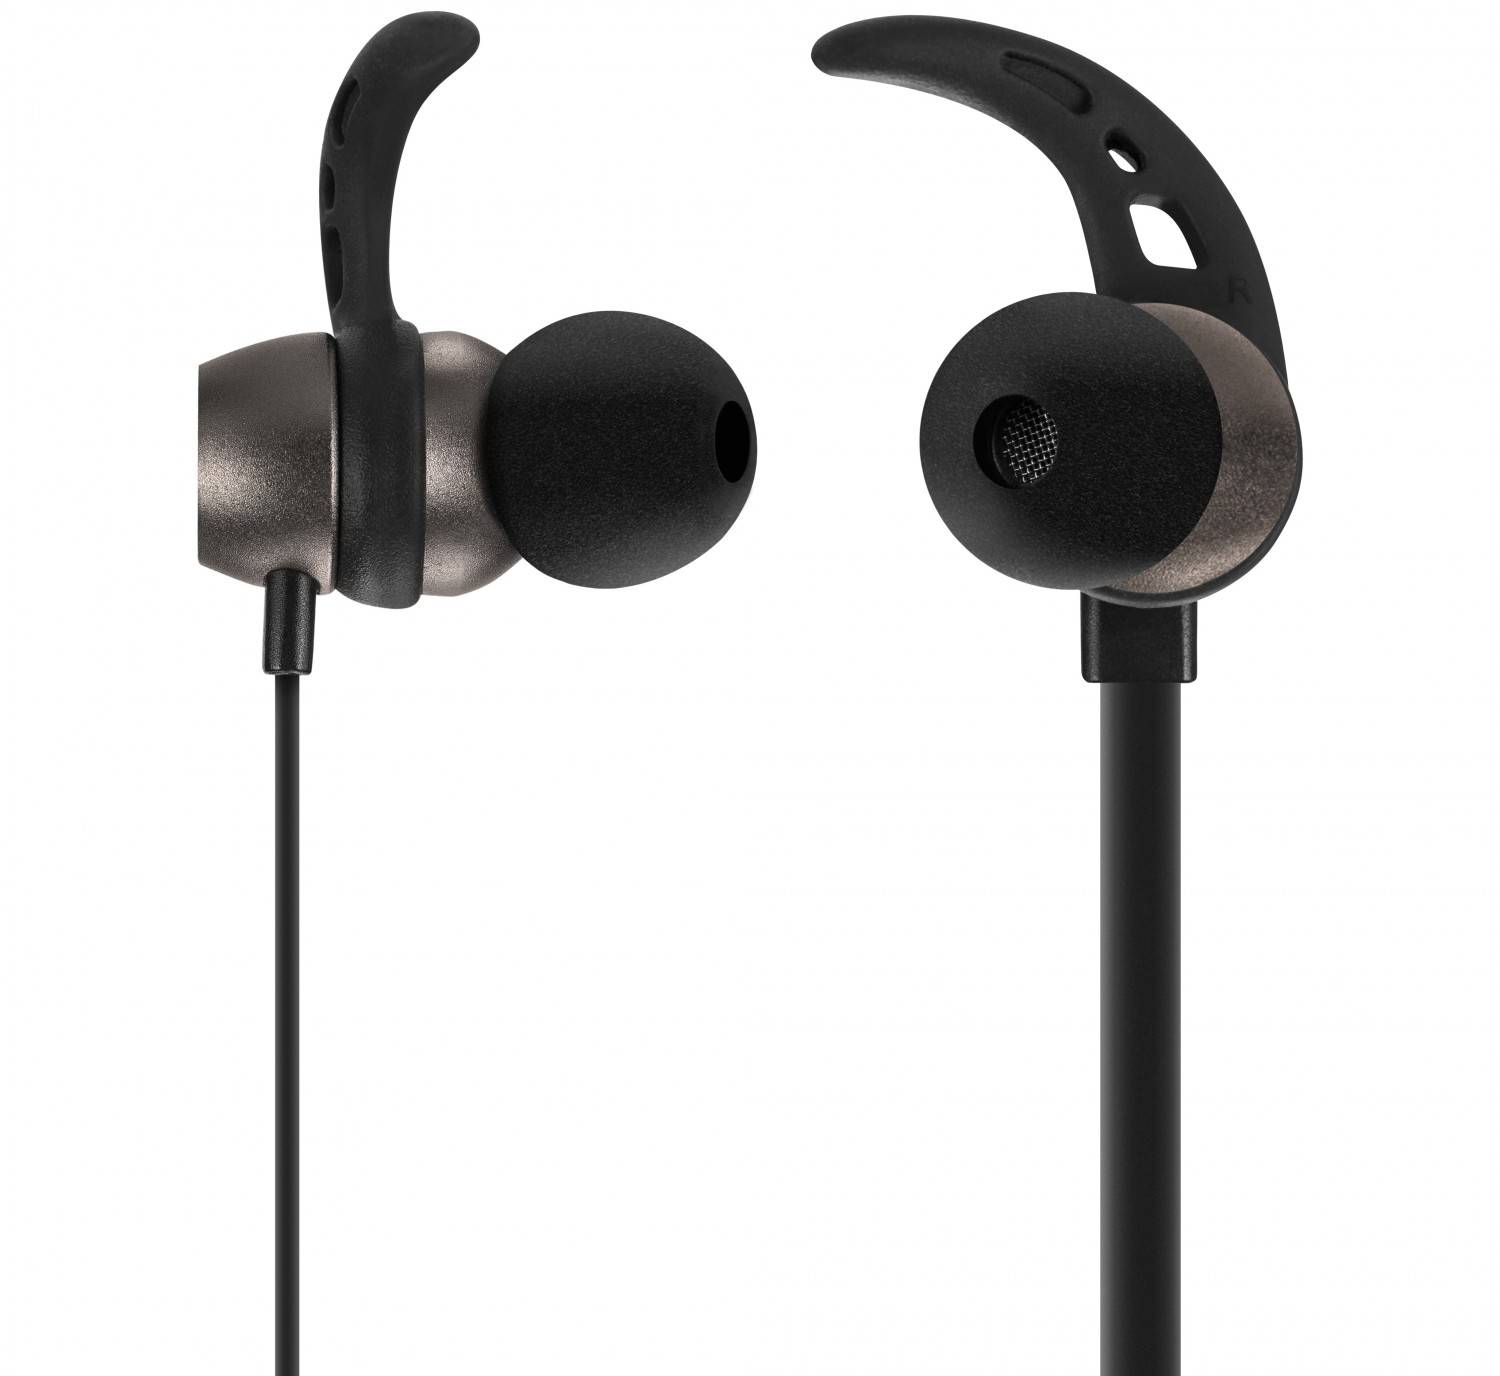 HiFi Kopfhörer von ACME mit Ear-Hooks - Bluetooth und sieben Stunden Akkulaufzeit - News, Bild 1